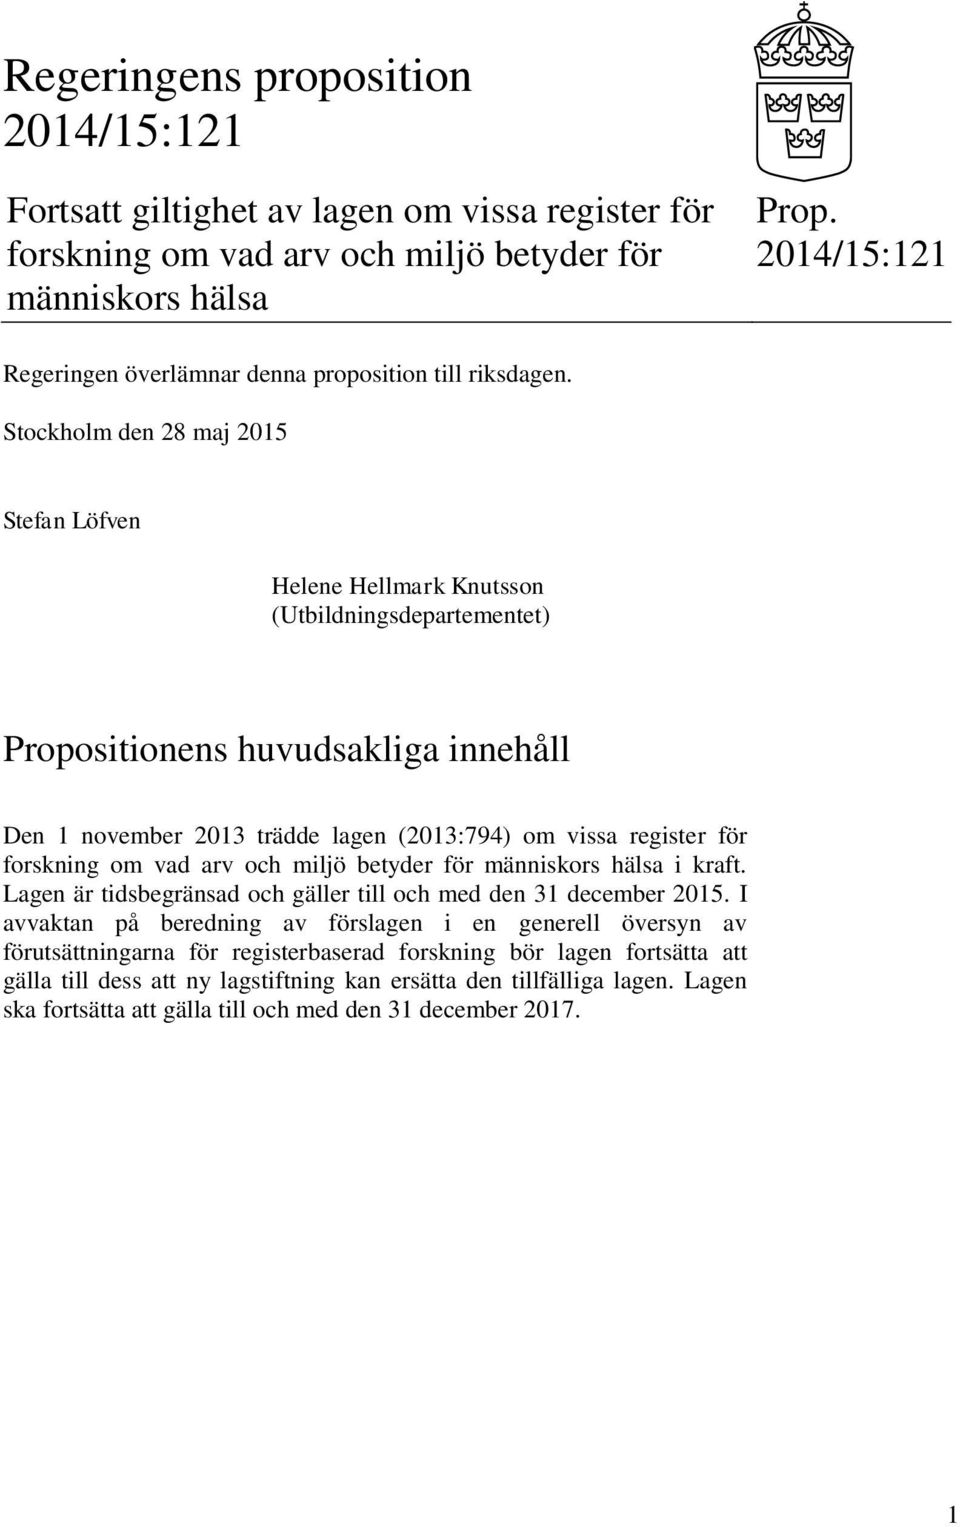 Stockholm den 28 maj 2015 Stefan Löfven Helene Hellmark Knutsson (Utbildningsdepartementet) Propositionens huvudsakliga innehåll Den 1 november 2013 trädde lagen (2013:794) om vissa register för